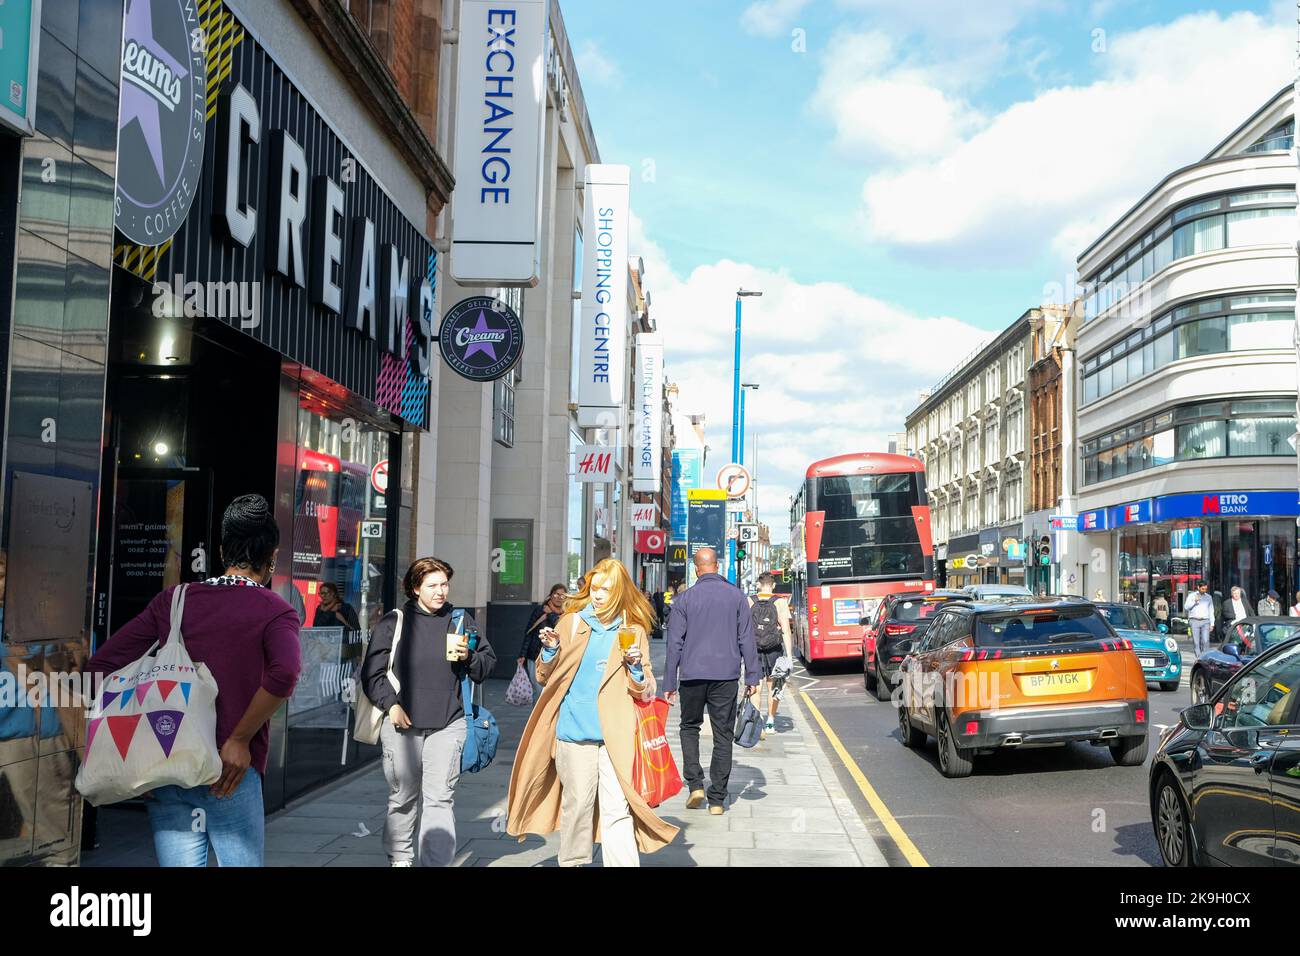 London - Oktober 2022: Straßenszene mit Einkäufern und Geschäften auf der Putney High Street im Südwesten Londons Stockfoto